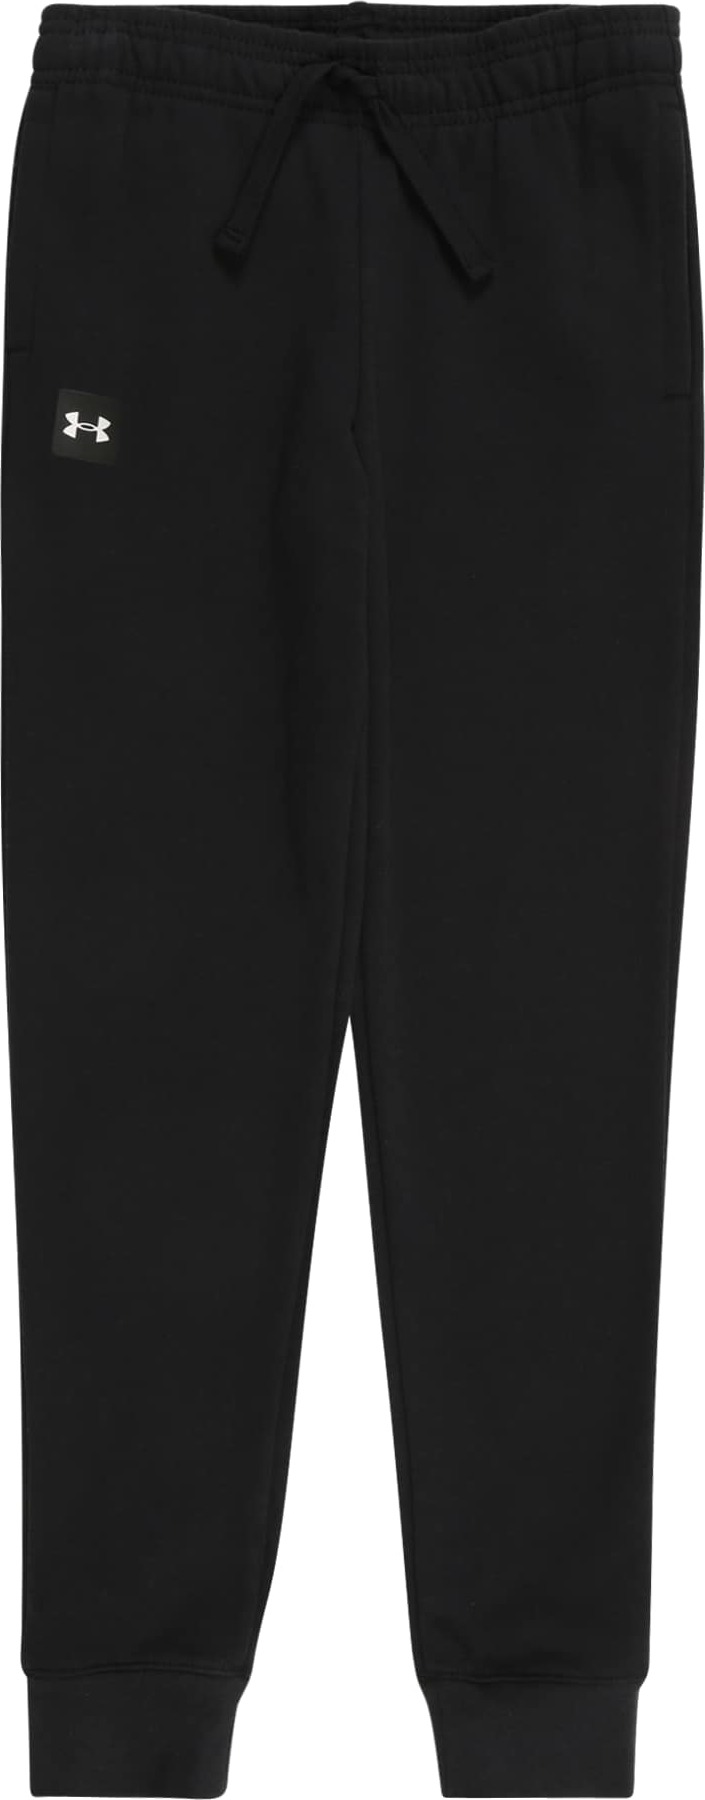 UNDER ARMOUR Sportovní kalhoty 'RIVAL' černá / bílá